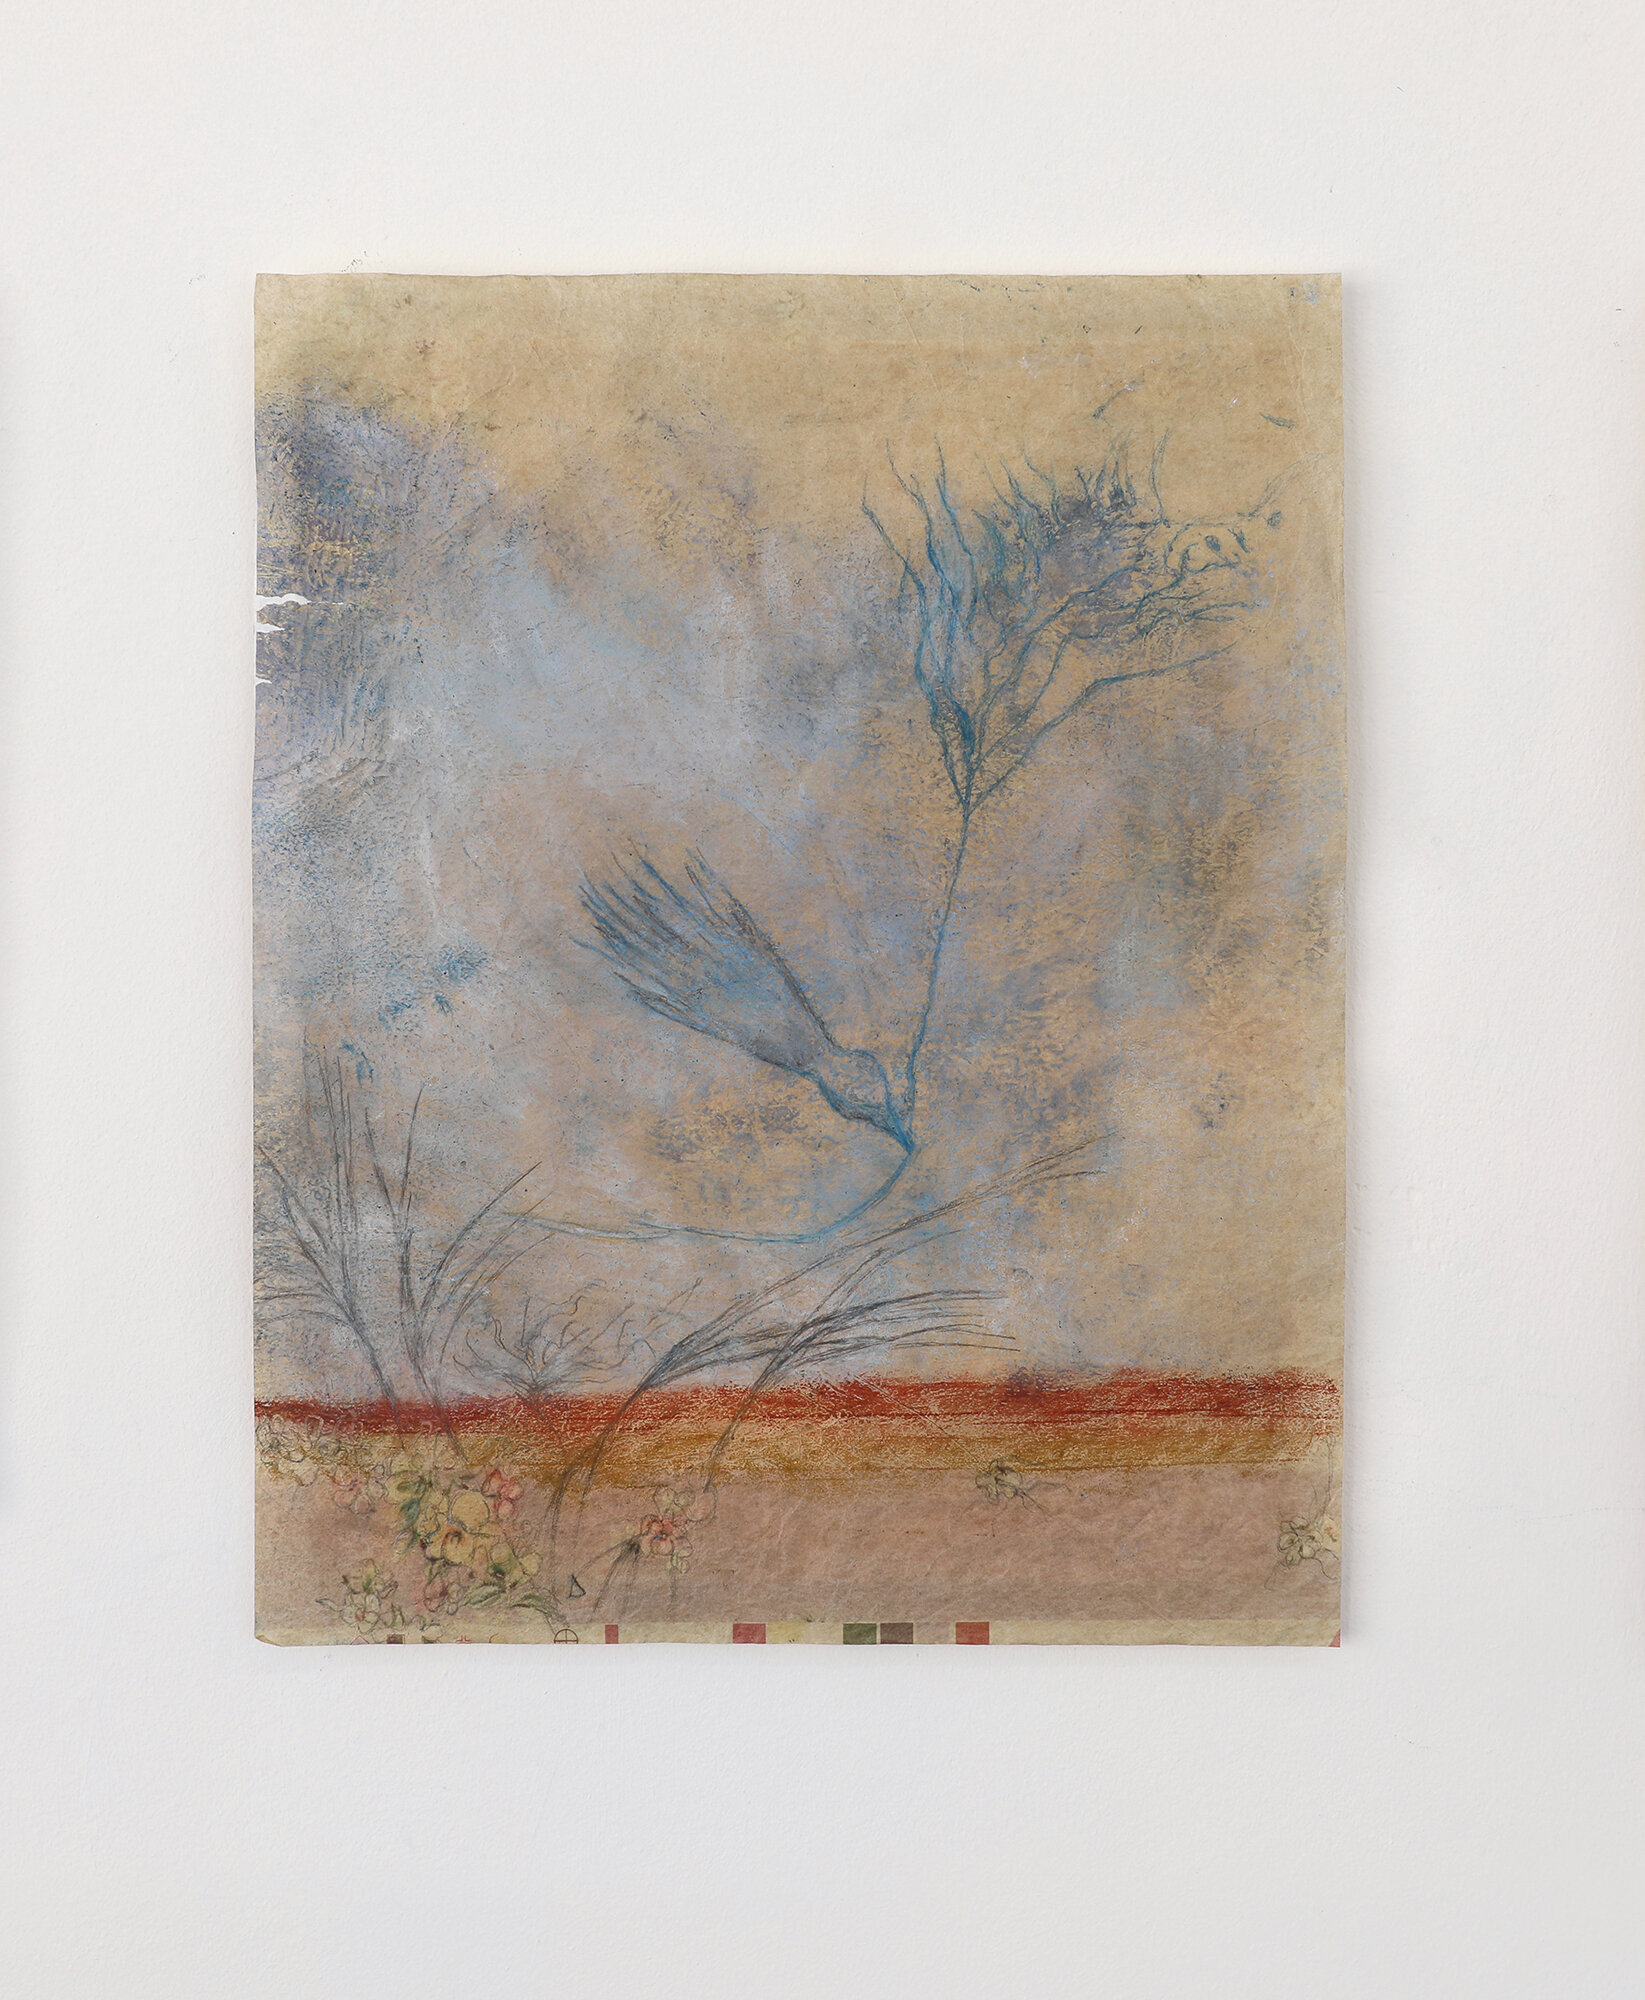   “Visite de l’oiseau”, («The Bird’s visit »)  2020, oil pastel and pencil on found paper, 32x39cm 